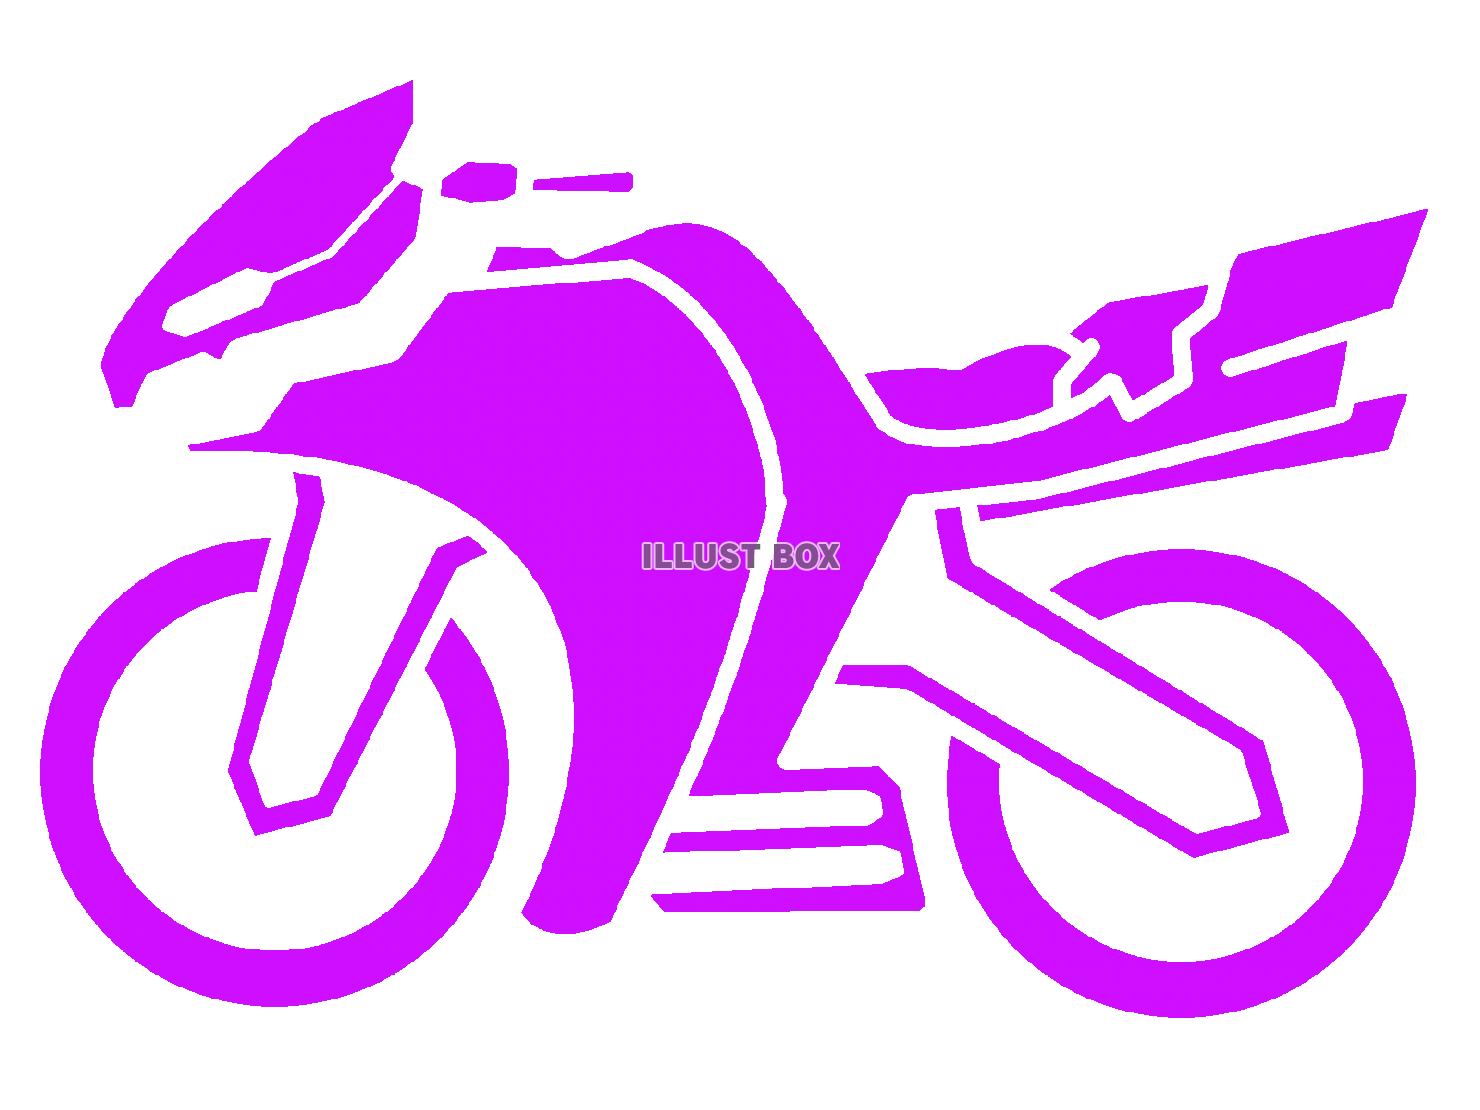 紫色のバイクのシルエットアイコン